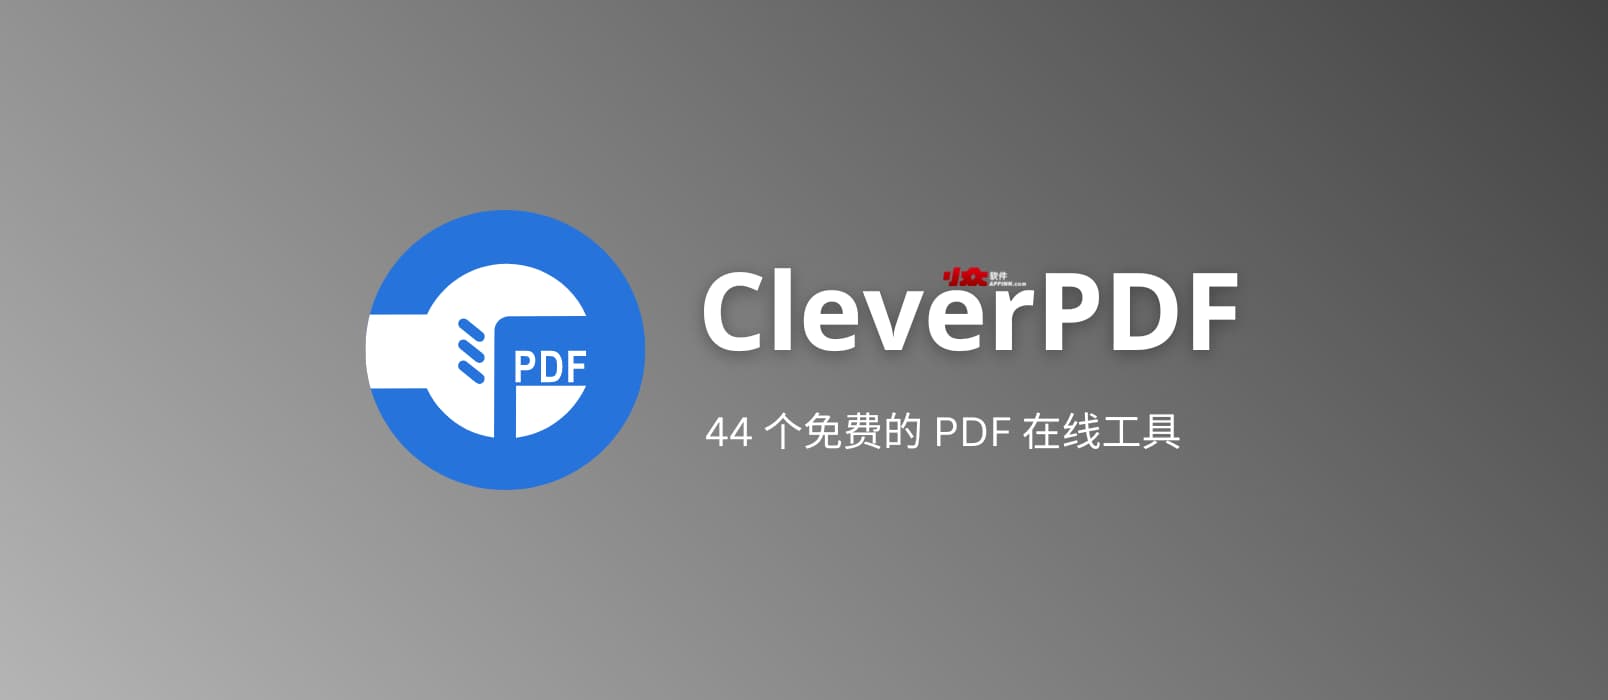 CleverPDF - 44 个免费的 PDF 在线工具：PDF 转 Word、解密、拆分、合并等